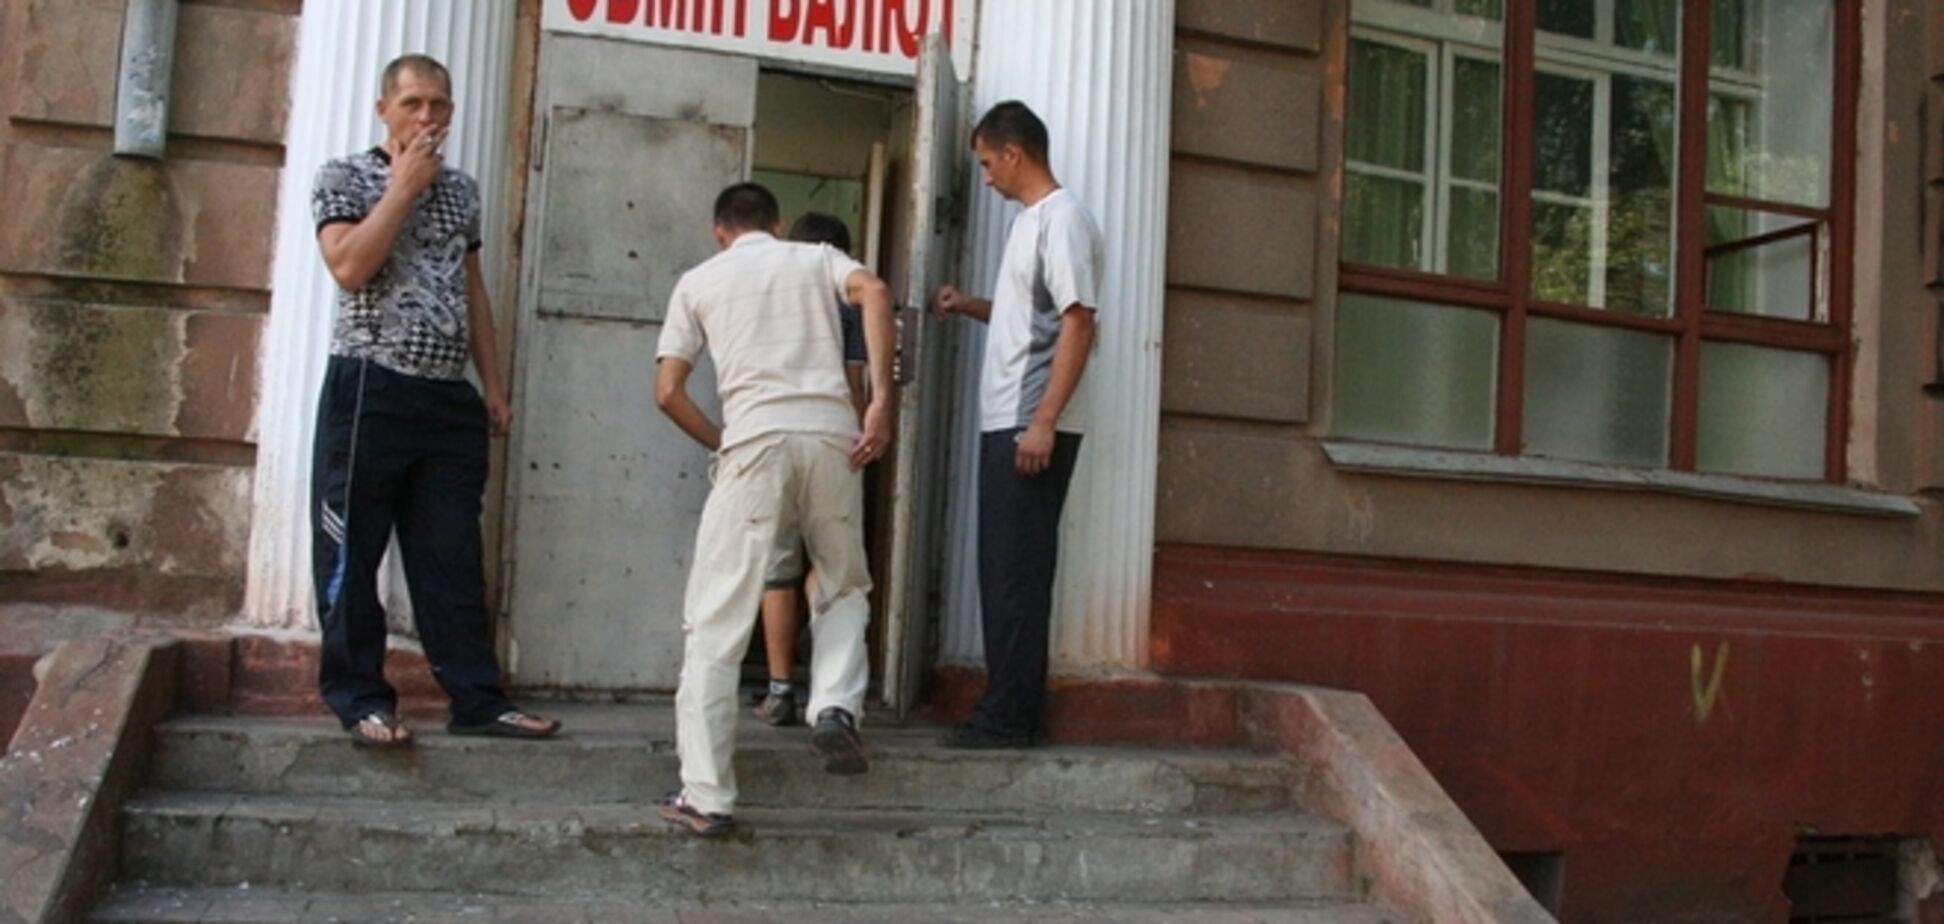 Боевики 'ДНР' намерены закрыть все обменники, отказавшиеся сотрудничать с их 'банком'